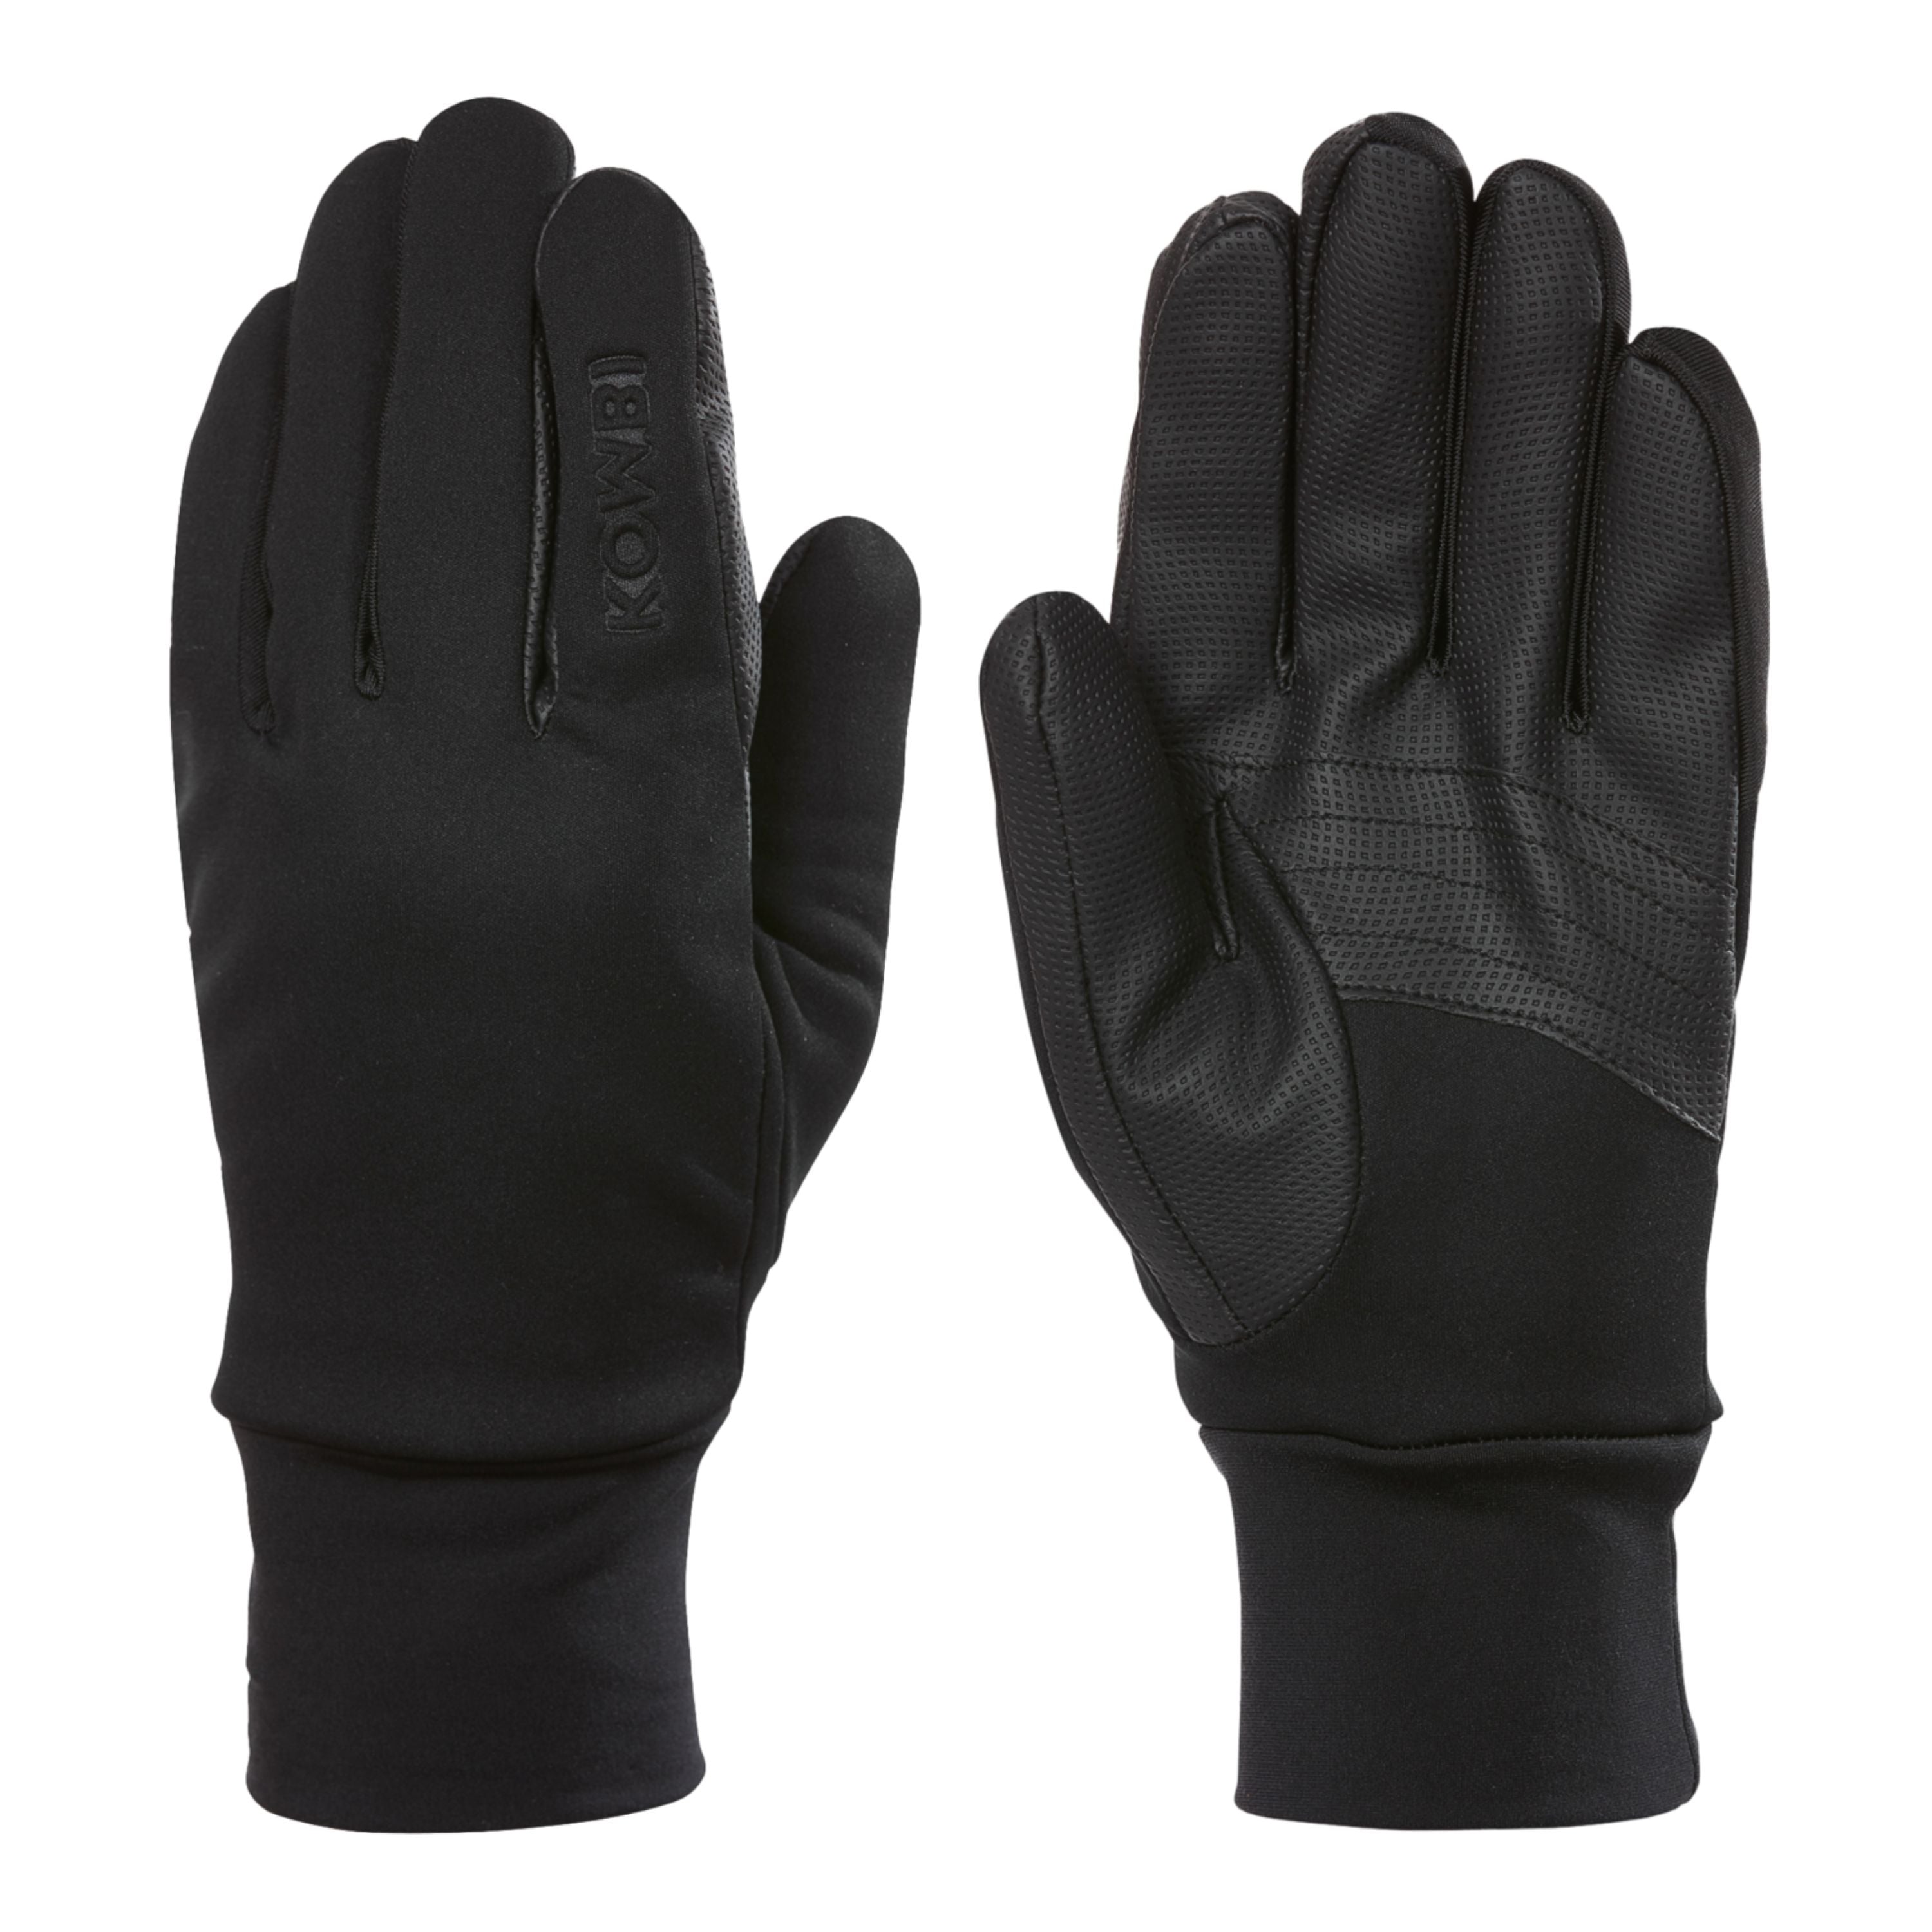 "The winter multi tasker" Gloves - Men’s